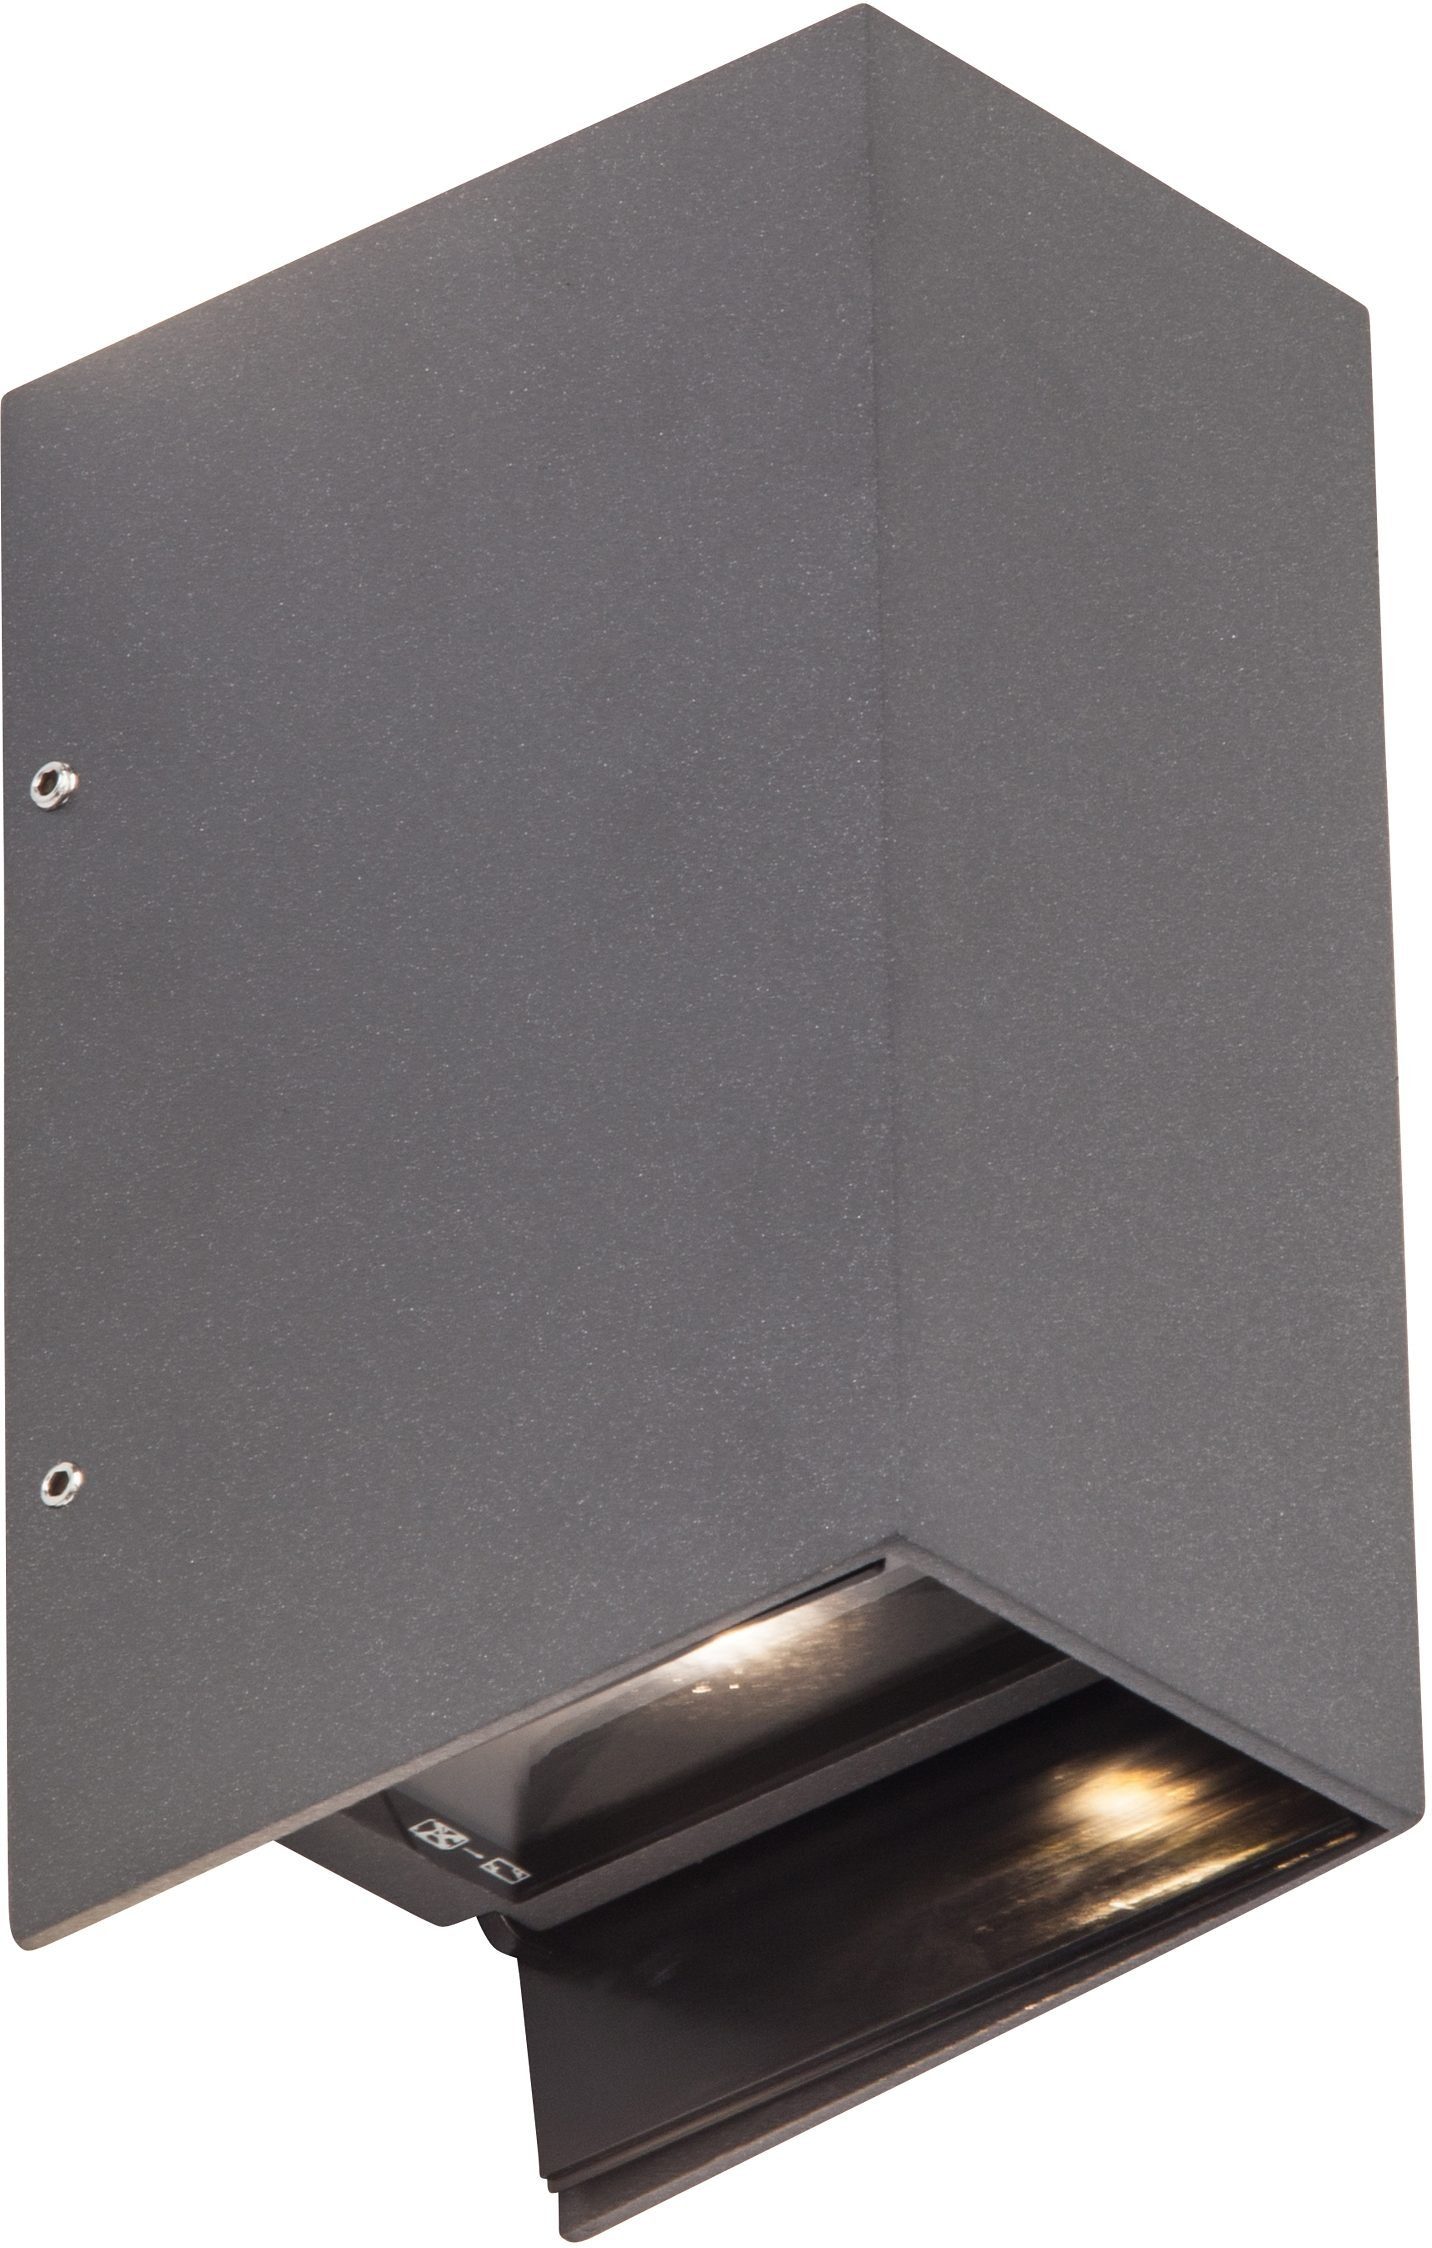 AEG LED Außen-Wandleuchte ADAPT, LED fest integriert, 17,2cm Höhe, Aluminium /Glas, anthrazit, Metall, schwarz, Gartenleuchte